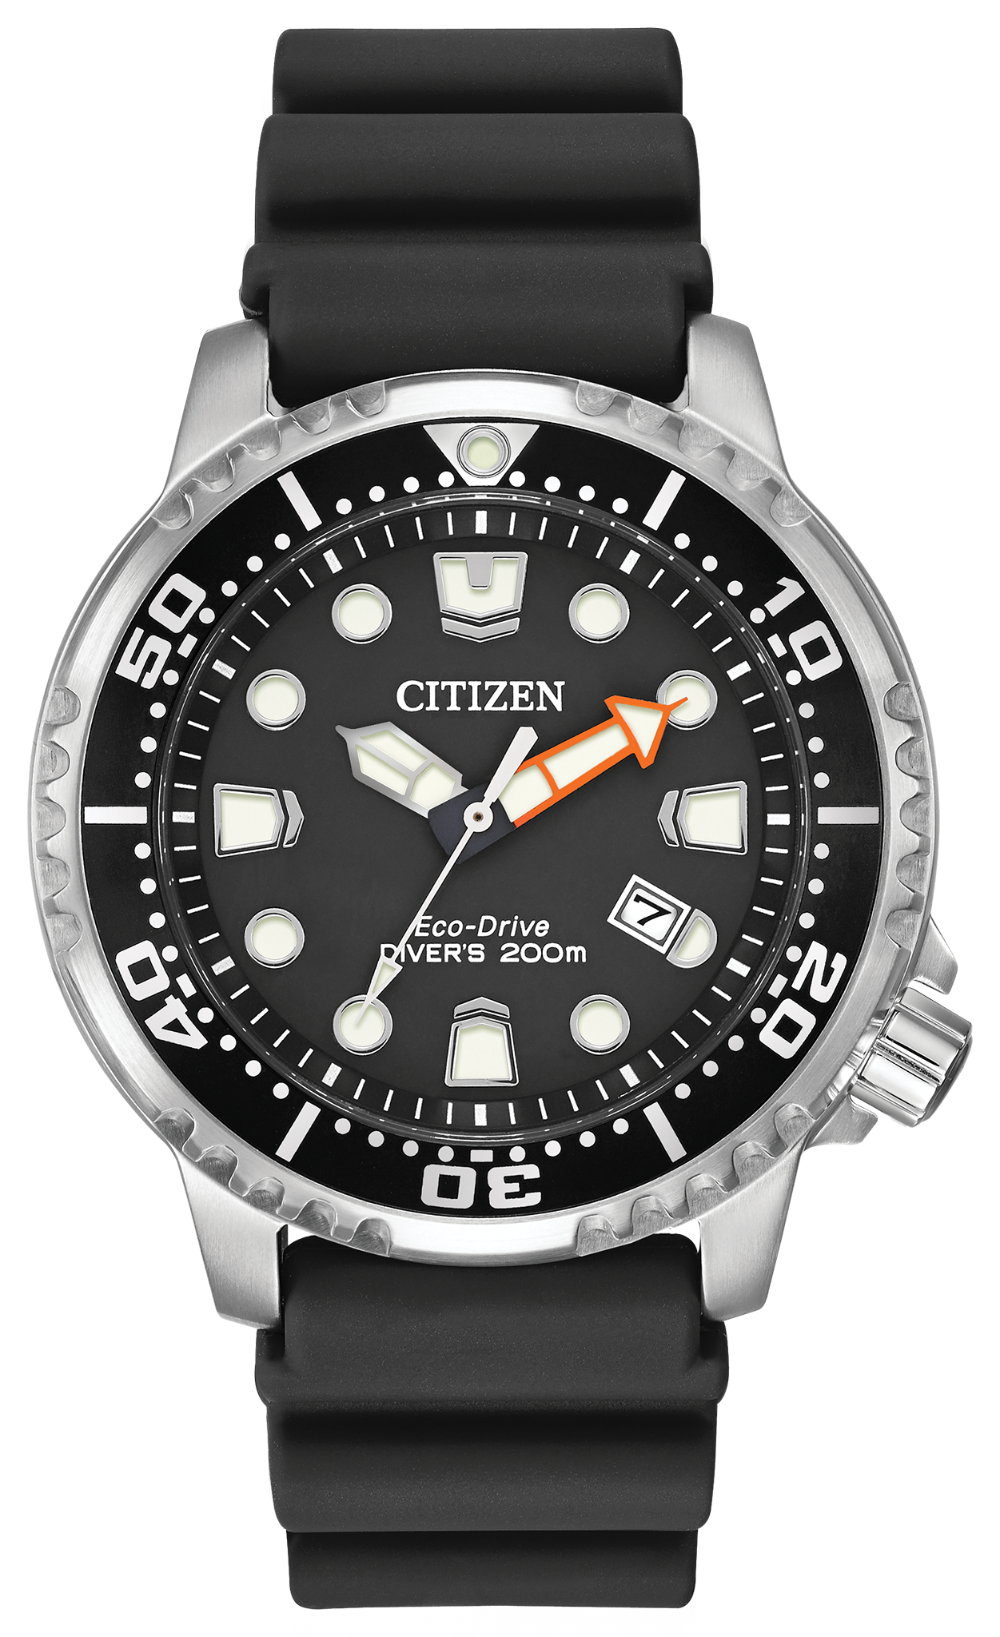 Citizen Eco-Drive Promaster Diver Watch BN0150-28E